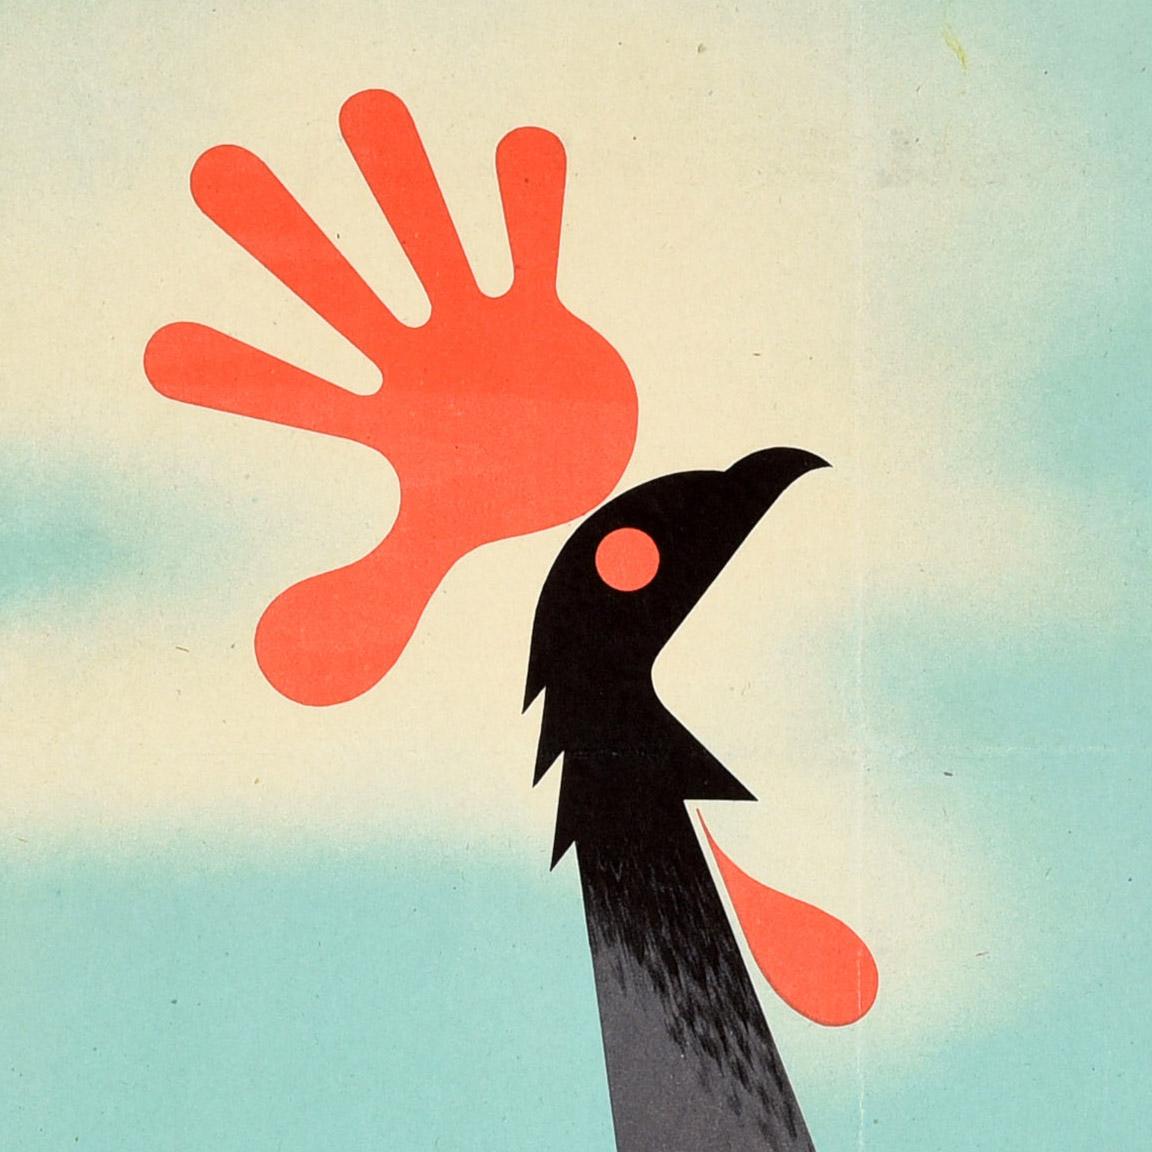 Affiche originale de la seconde guerre mondiale - When You Go Out Don't Crow About ... The Things You Know About (Les choses que vous connaissez) - Cette image est un superbe dessin du célèbre graphiste britannique Abram Games (Abraham Gamse ;